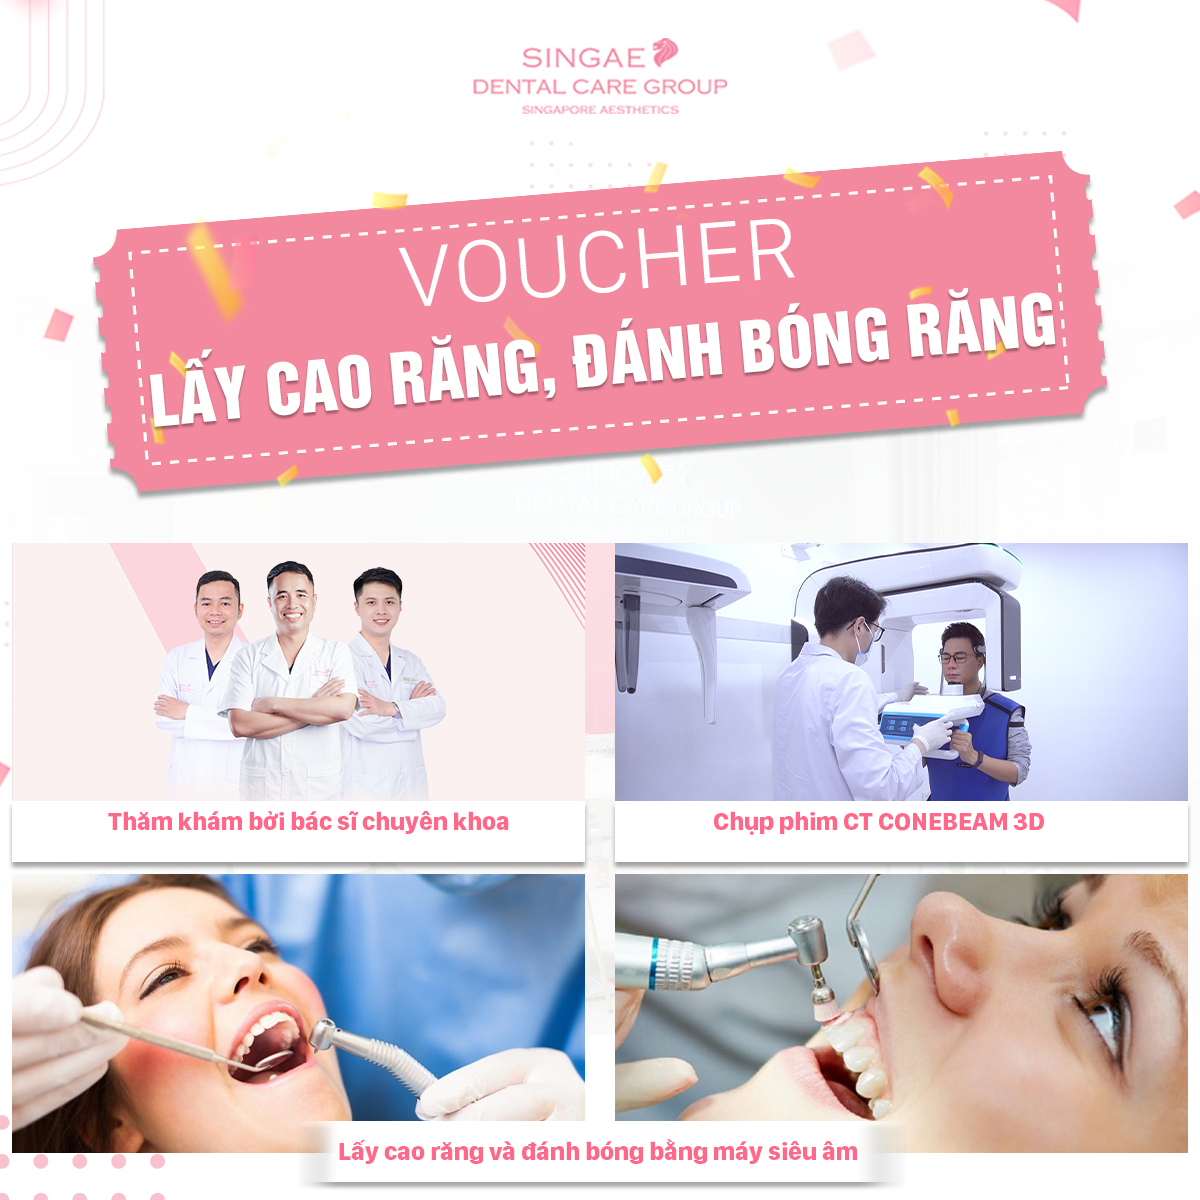 [Hồ Chí Minh và Hà Nội] E-voucher Lấy cao răng, Chụp phim CT CONEBEAM 3D và Thăm khám chuyên sâu theo tiêu chuẩn Singaepore - Nha khoa Singae